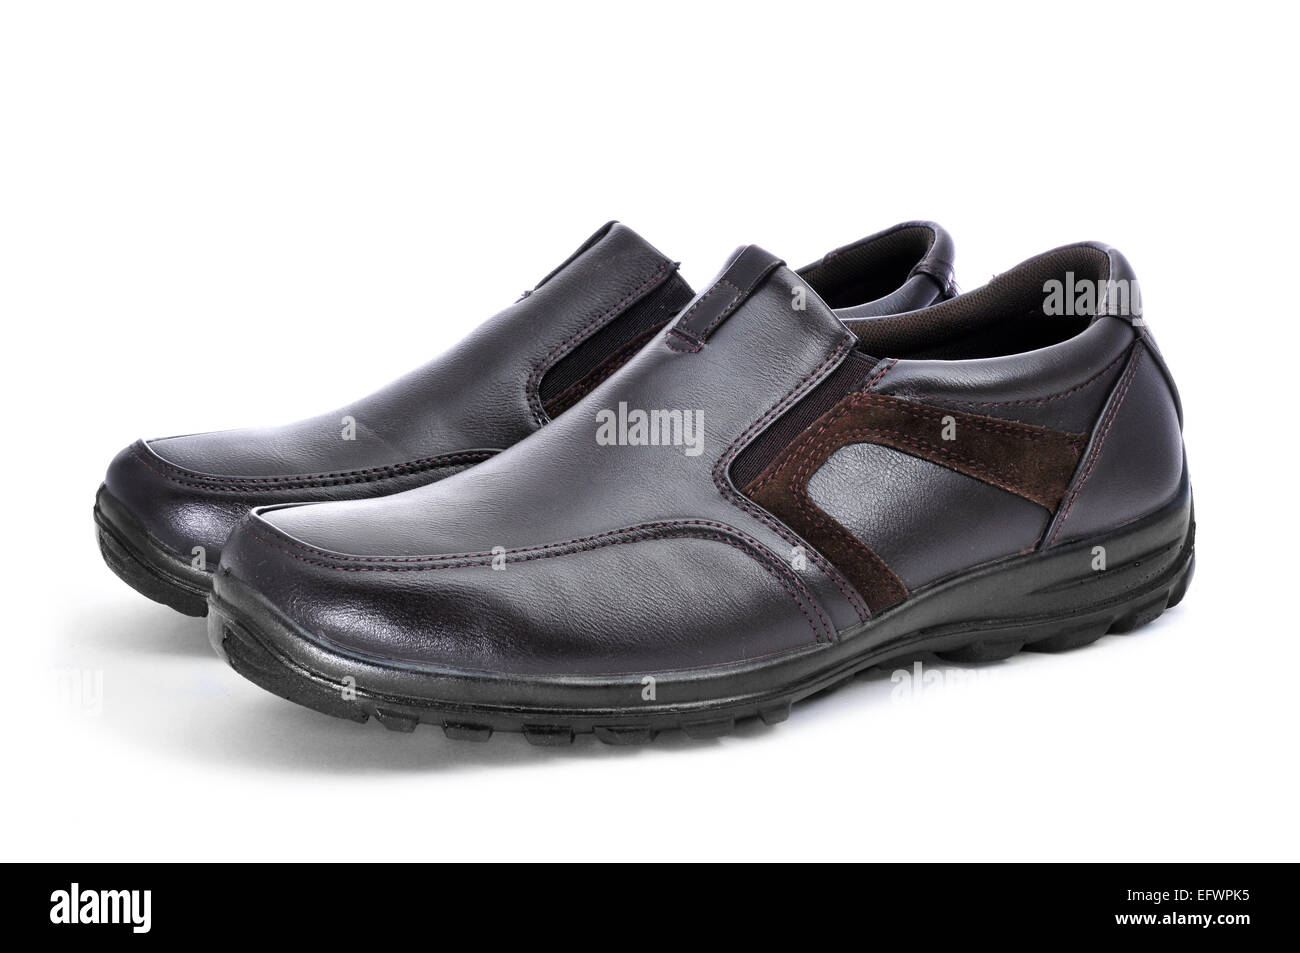 Verkauf von Leder-Schuhe für Männer auf einem Marktstand in Cannobio,  Italien Stockfotografie - Alamy